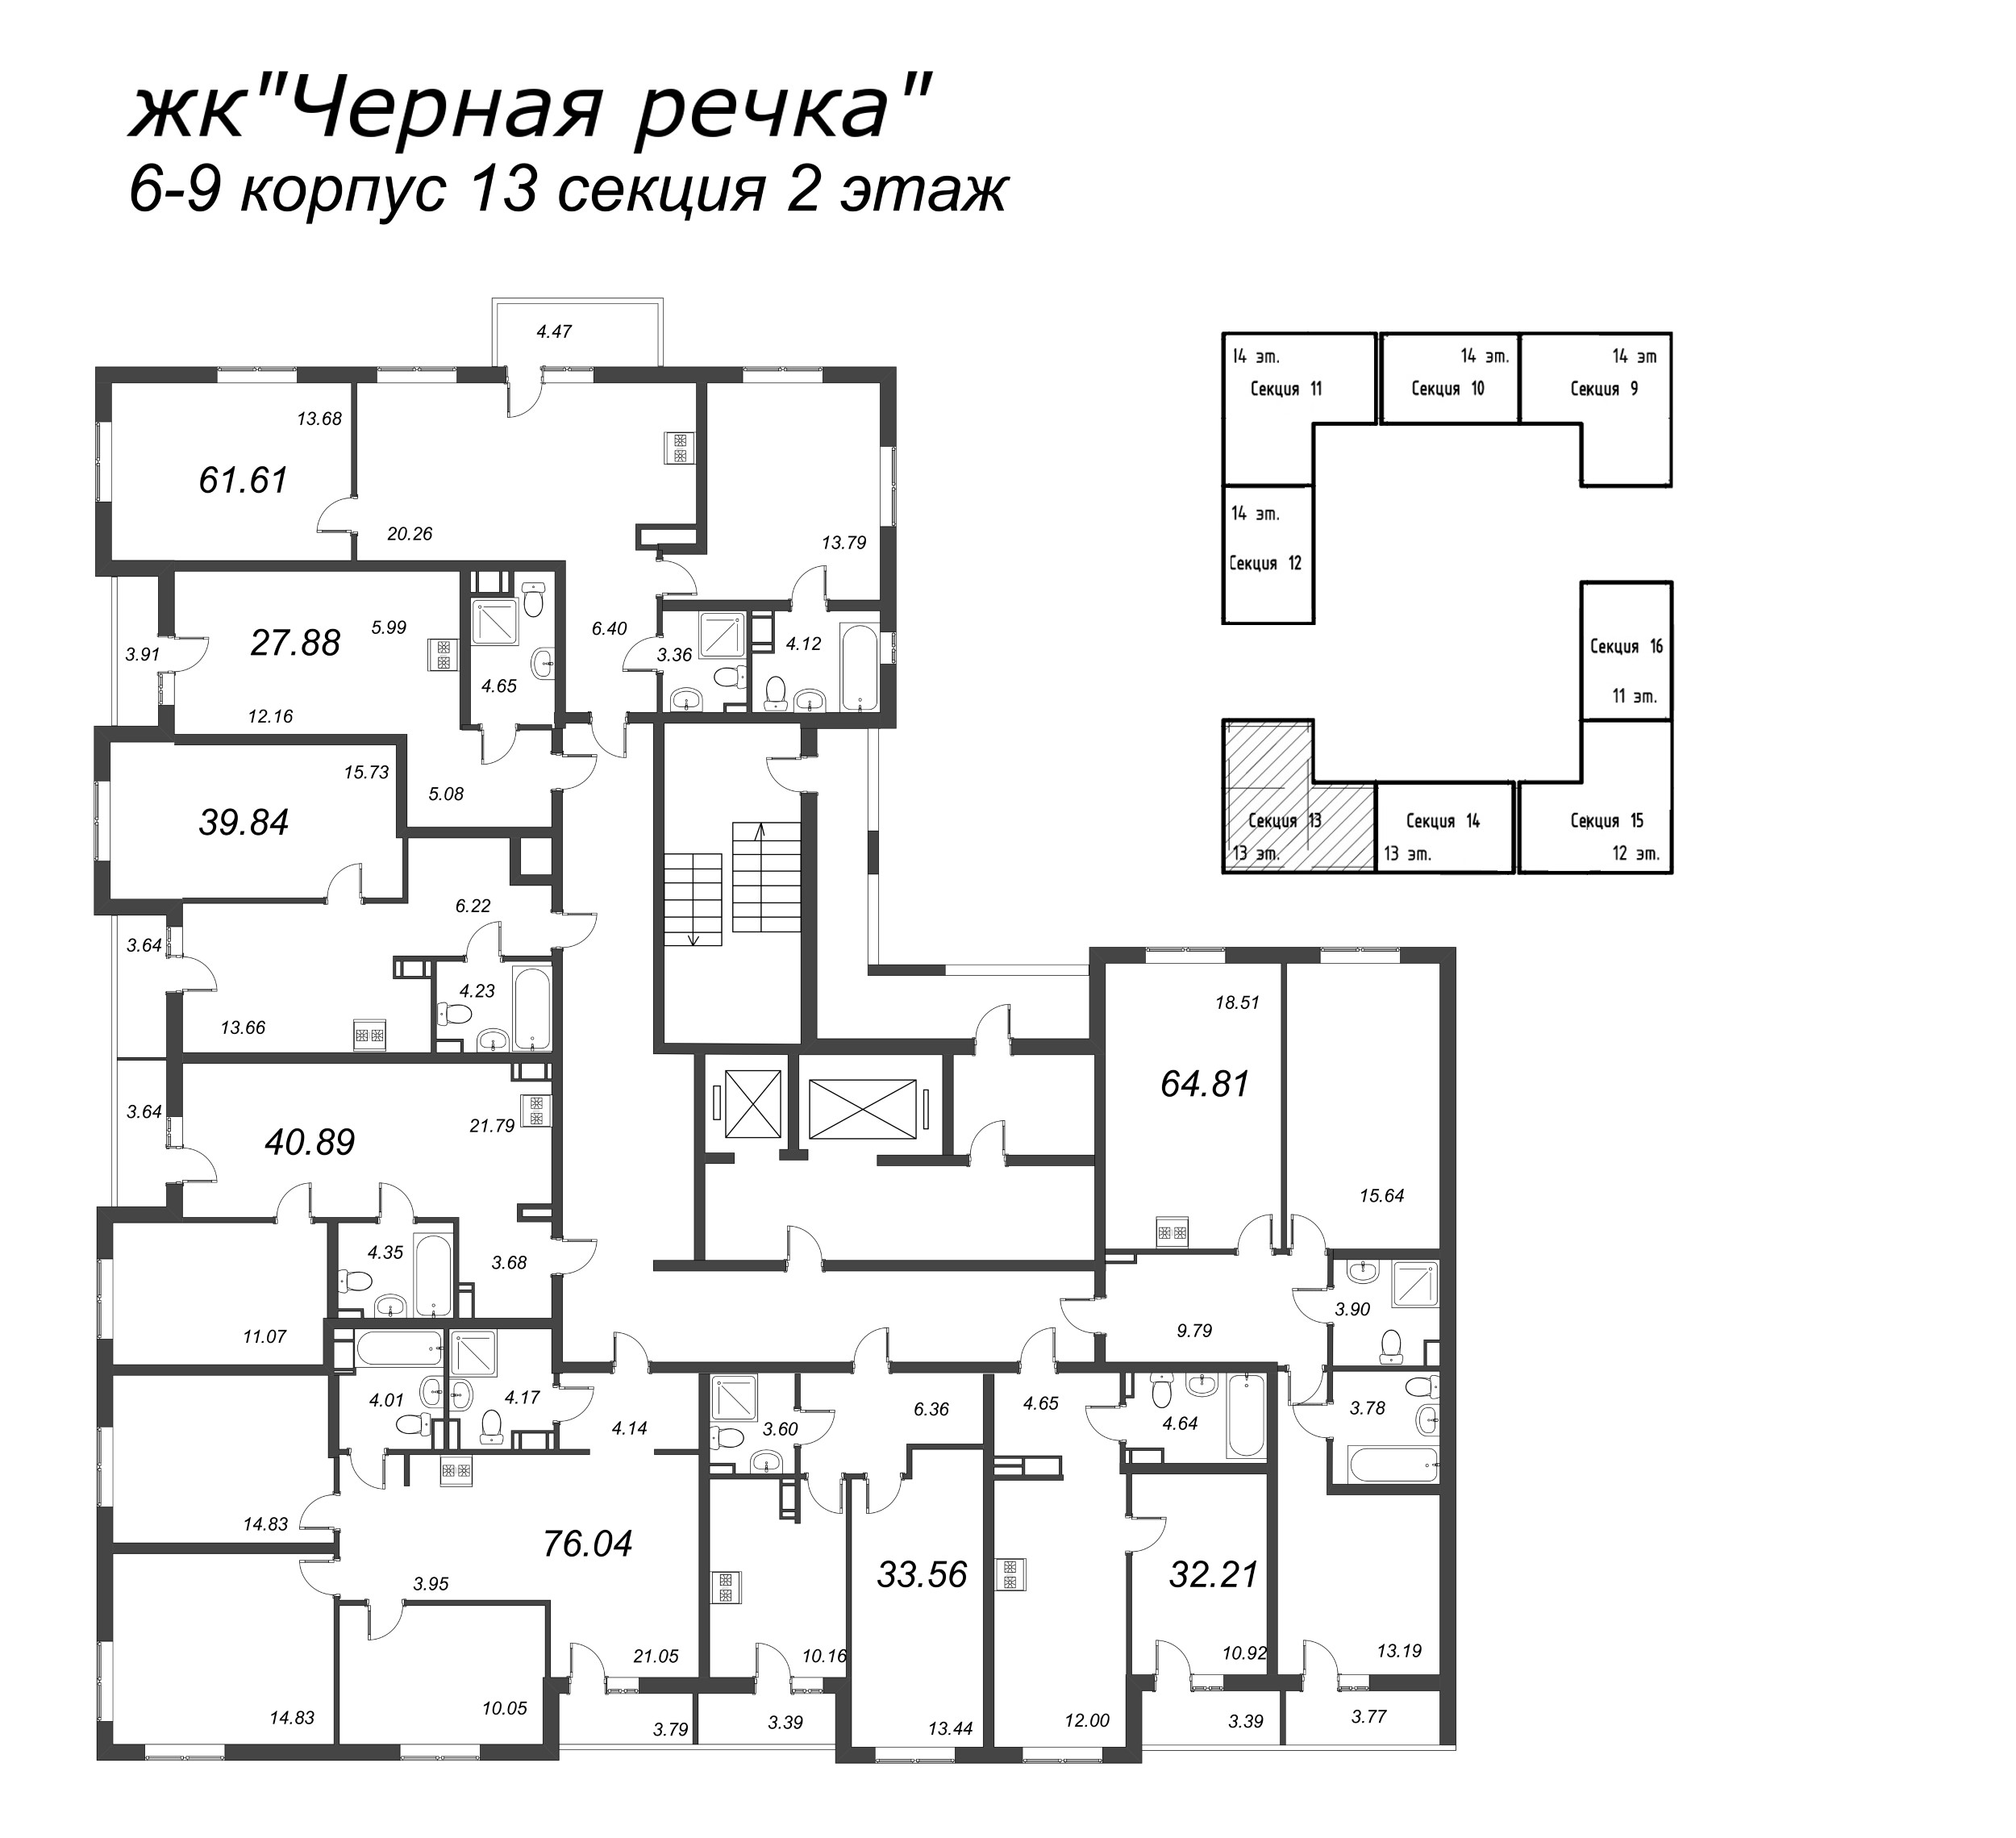 1-комнатная квартира, 33.56 м² в ЖК "Чёрная речка" - планировка этажа